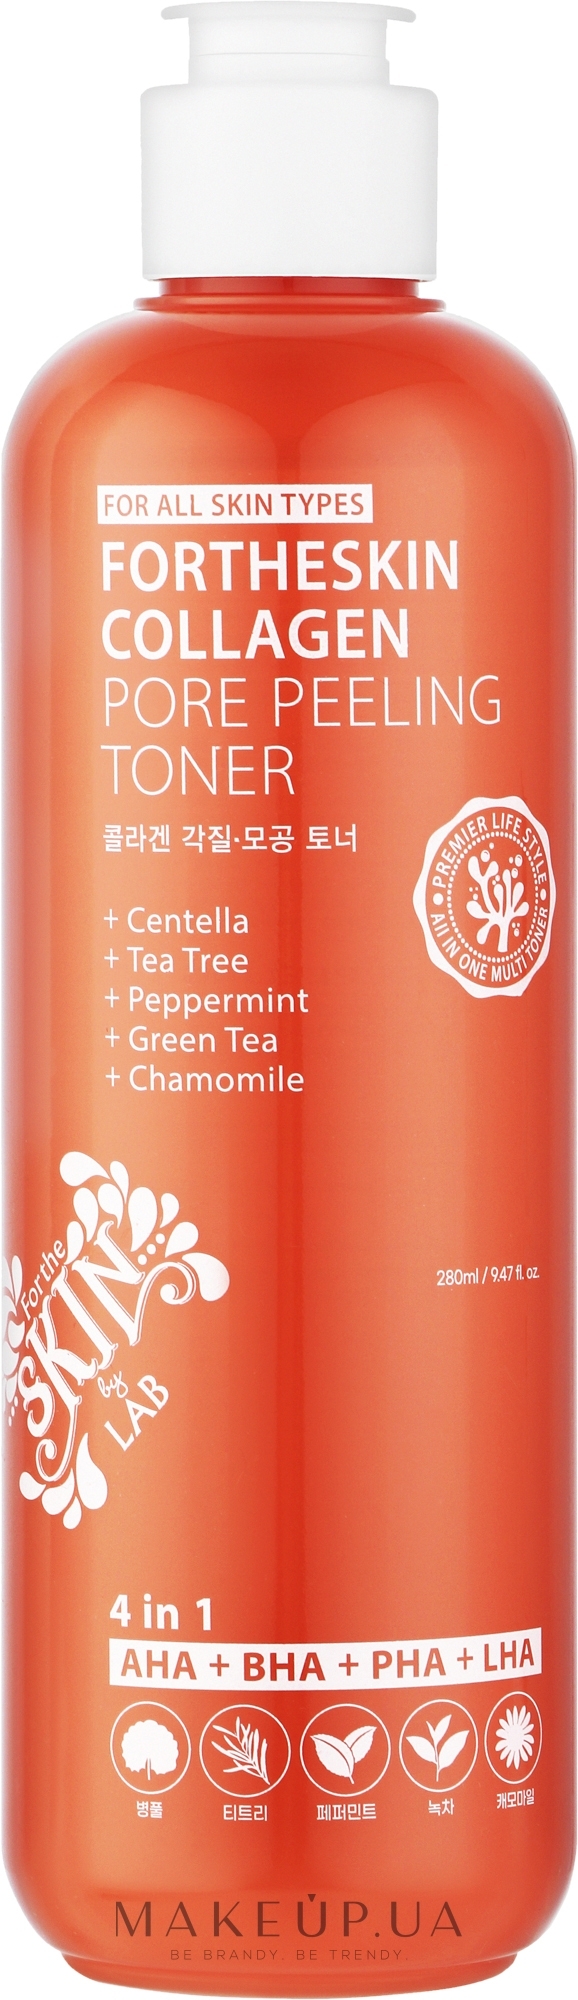 Тонер-пилинг для лица с коллагеном - Fortheskin Collagen Pore Peeling Toner — фото 280ml